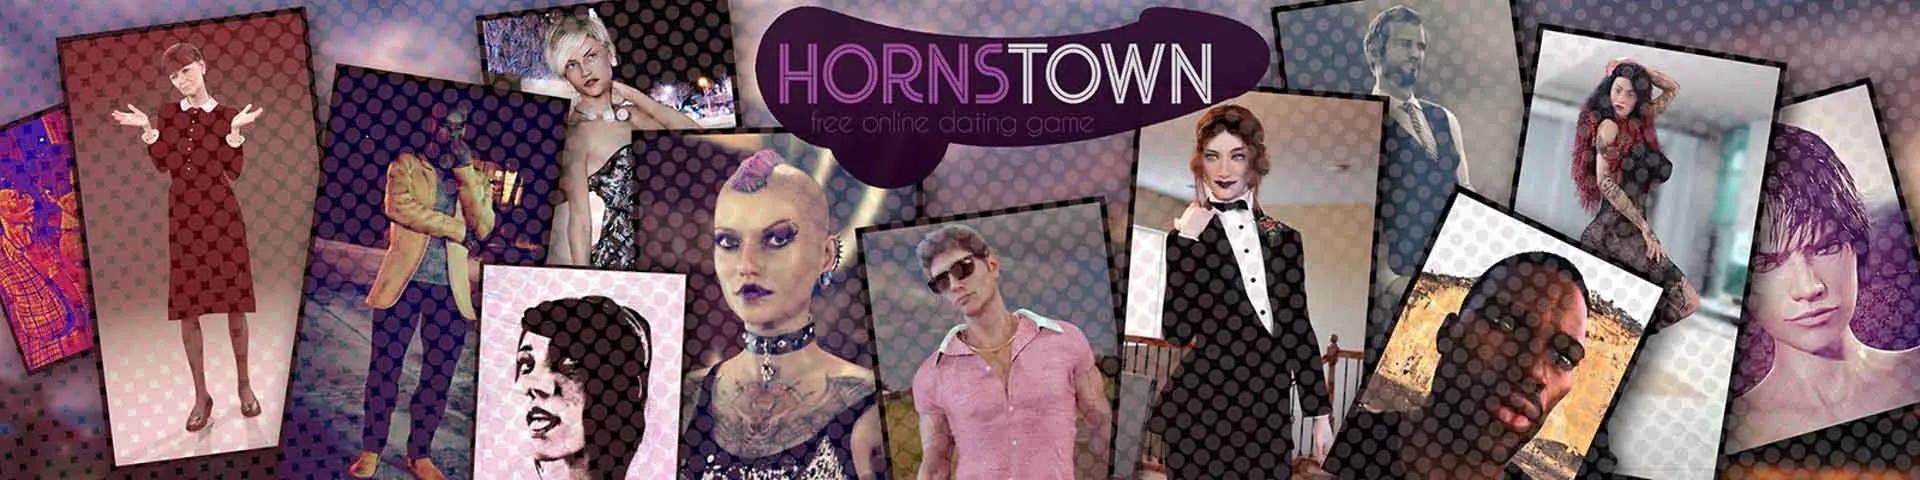 Tempos difíceis em Hornstown 3d jogo de sexo, jogo pornô, jogo adulto